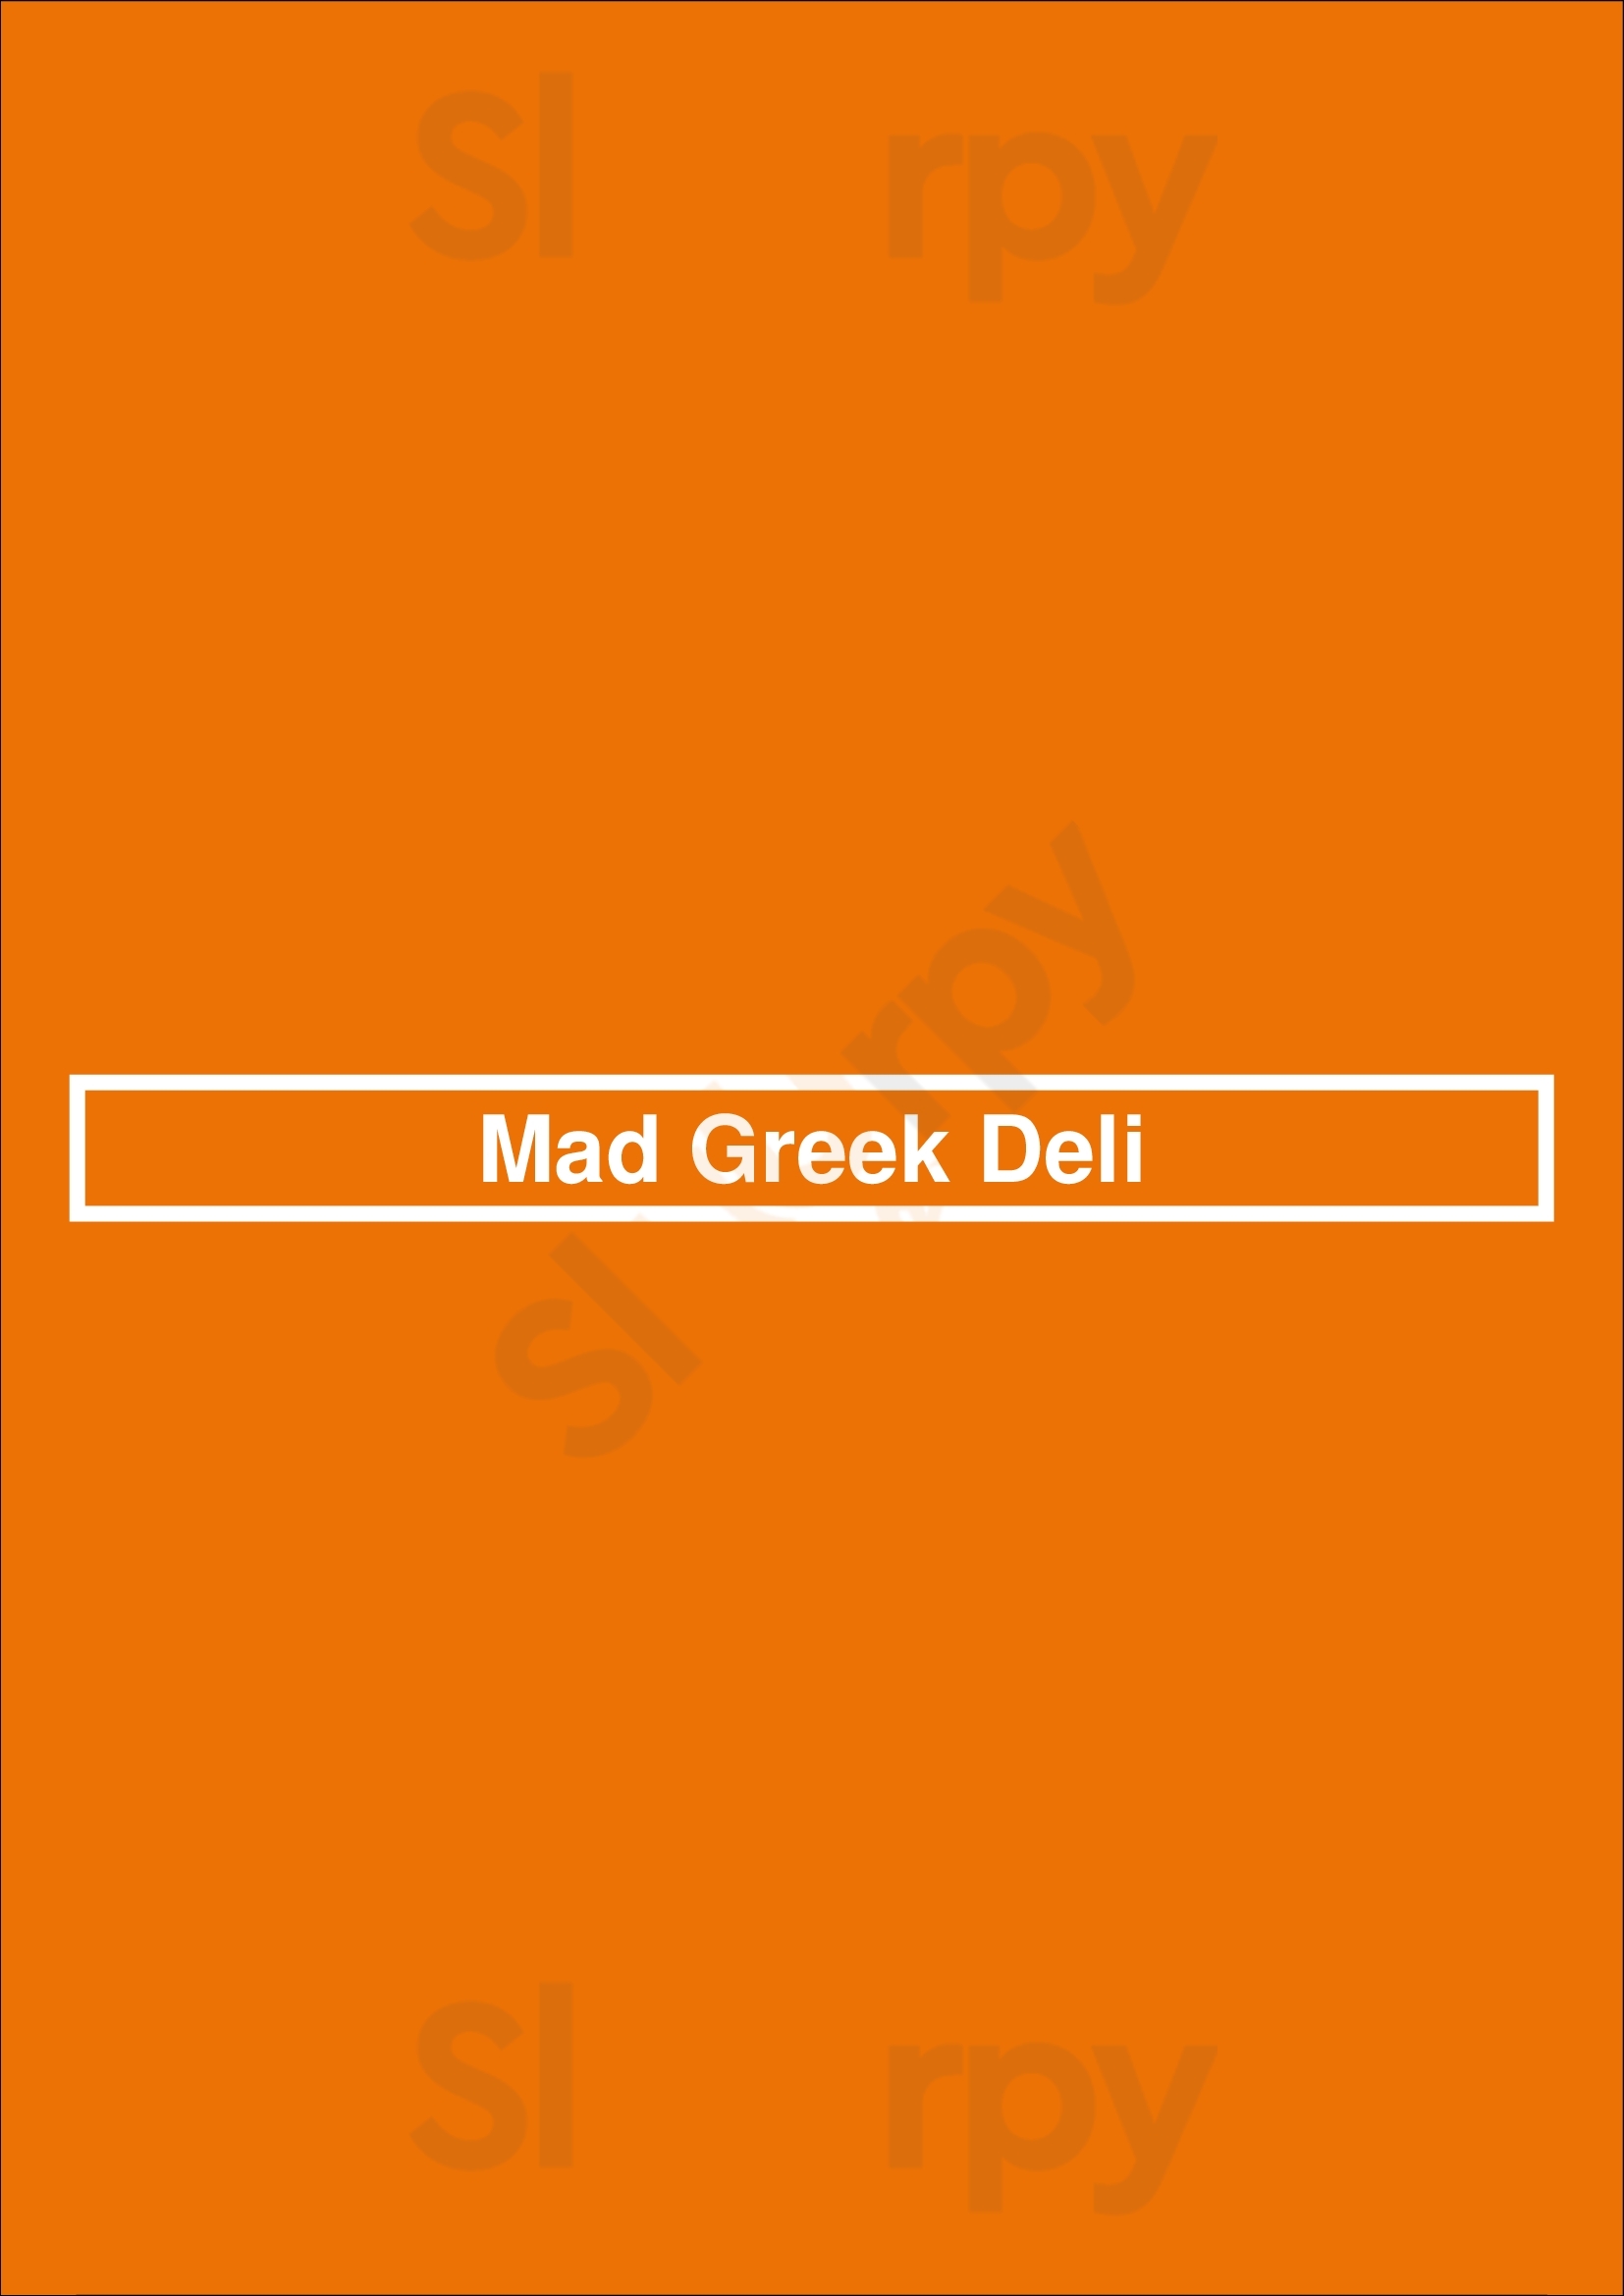 Mad Greek Deli Portland Menu - 1